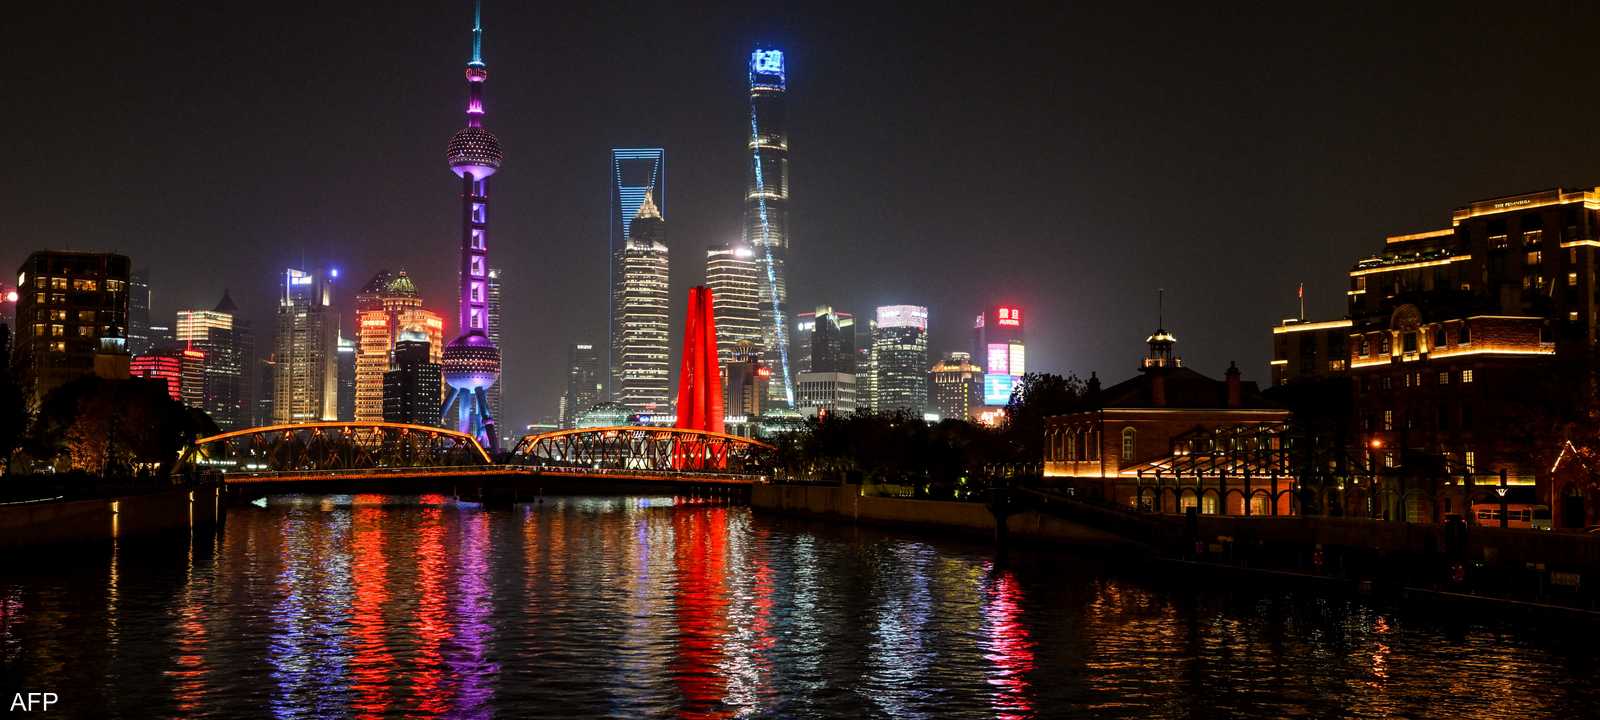 اقتصاد الصين - نهر سوتشو في منطقة لوجياتسوي المالية شنغهاي